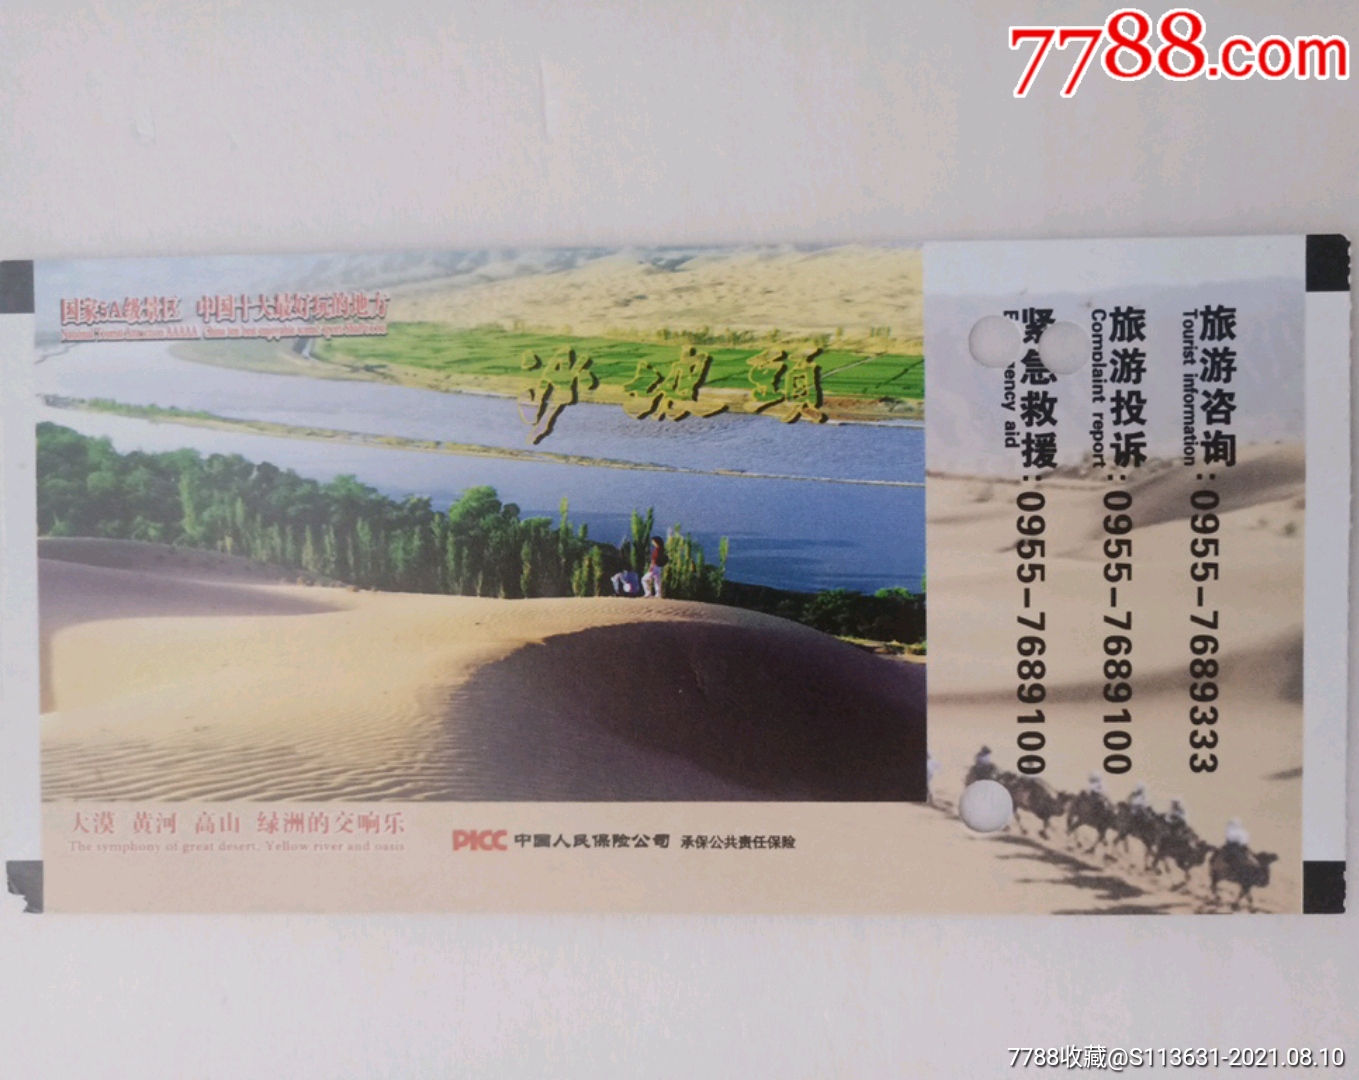 沙坡头-价格:1.0000元-se81940989-旅游景点门票-零售-7788纪念币